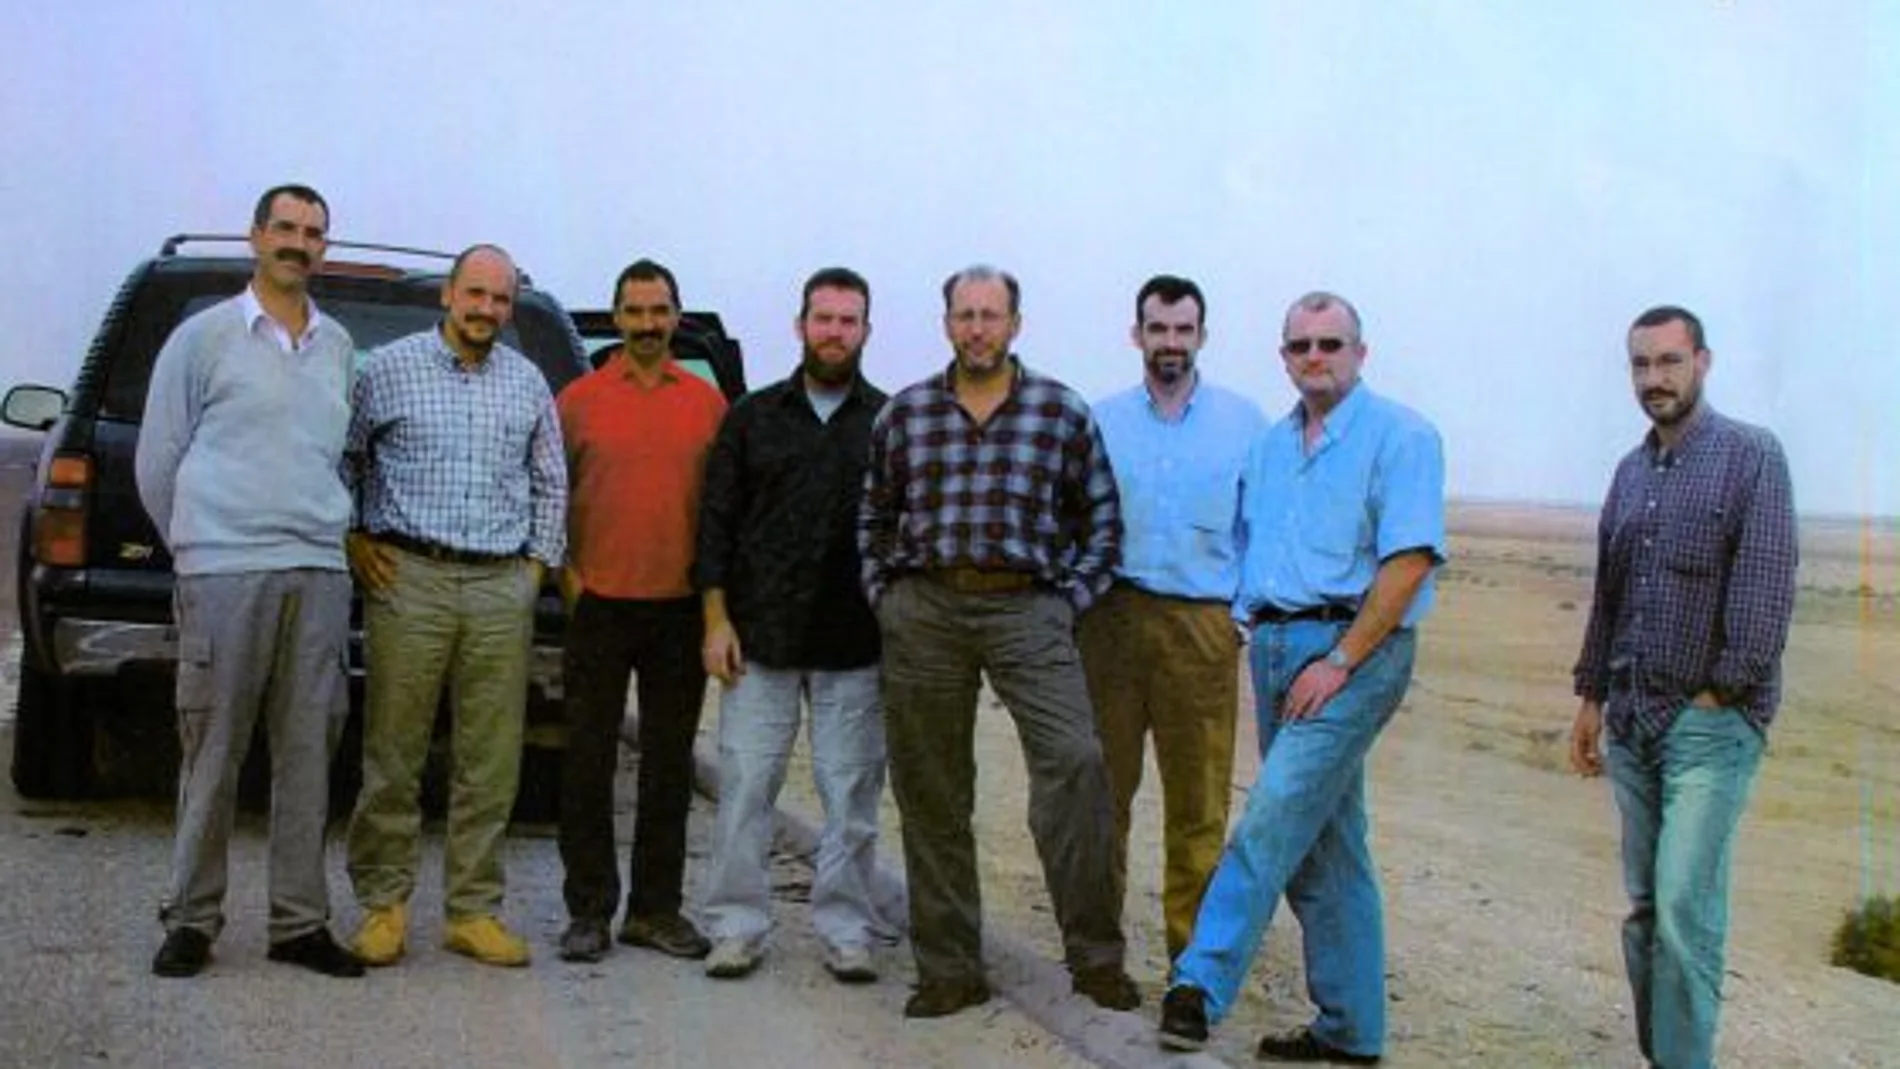 Imagen de los ocho agentes que sufrieron el ataque en 2003 en Irak.